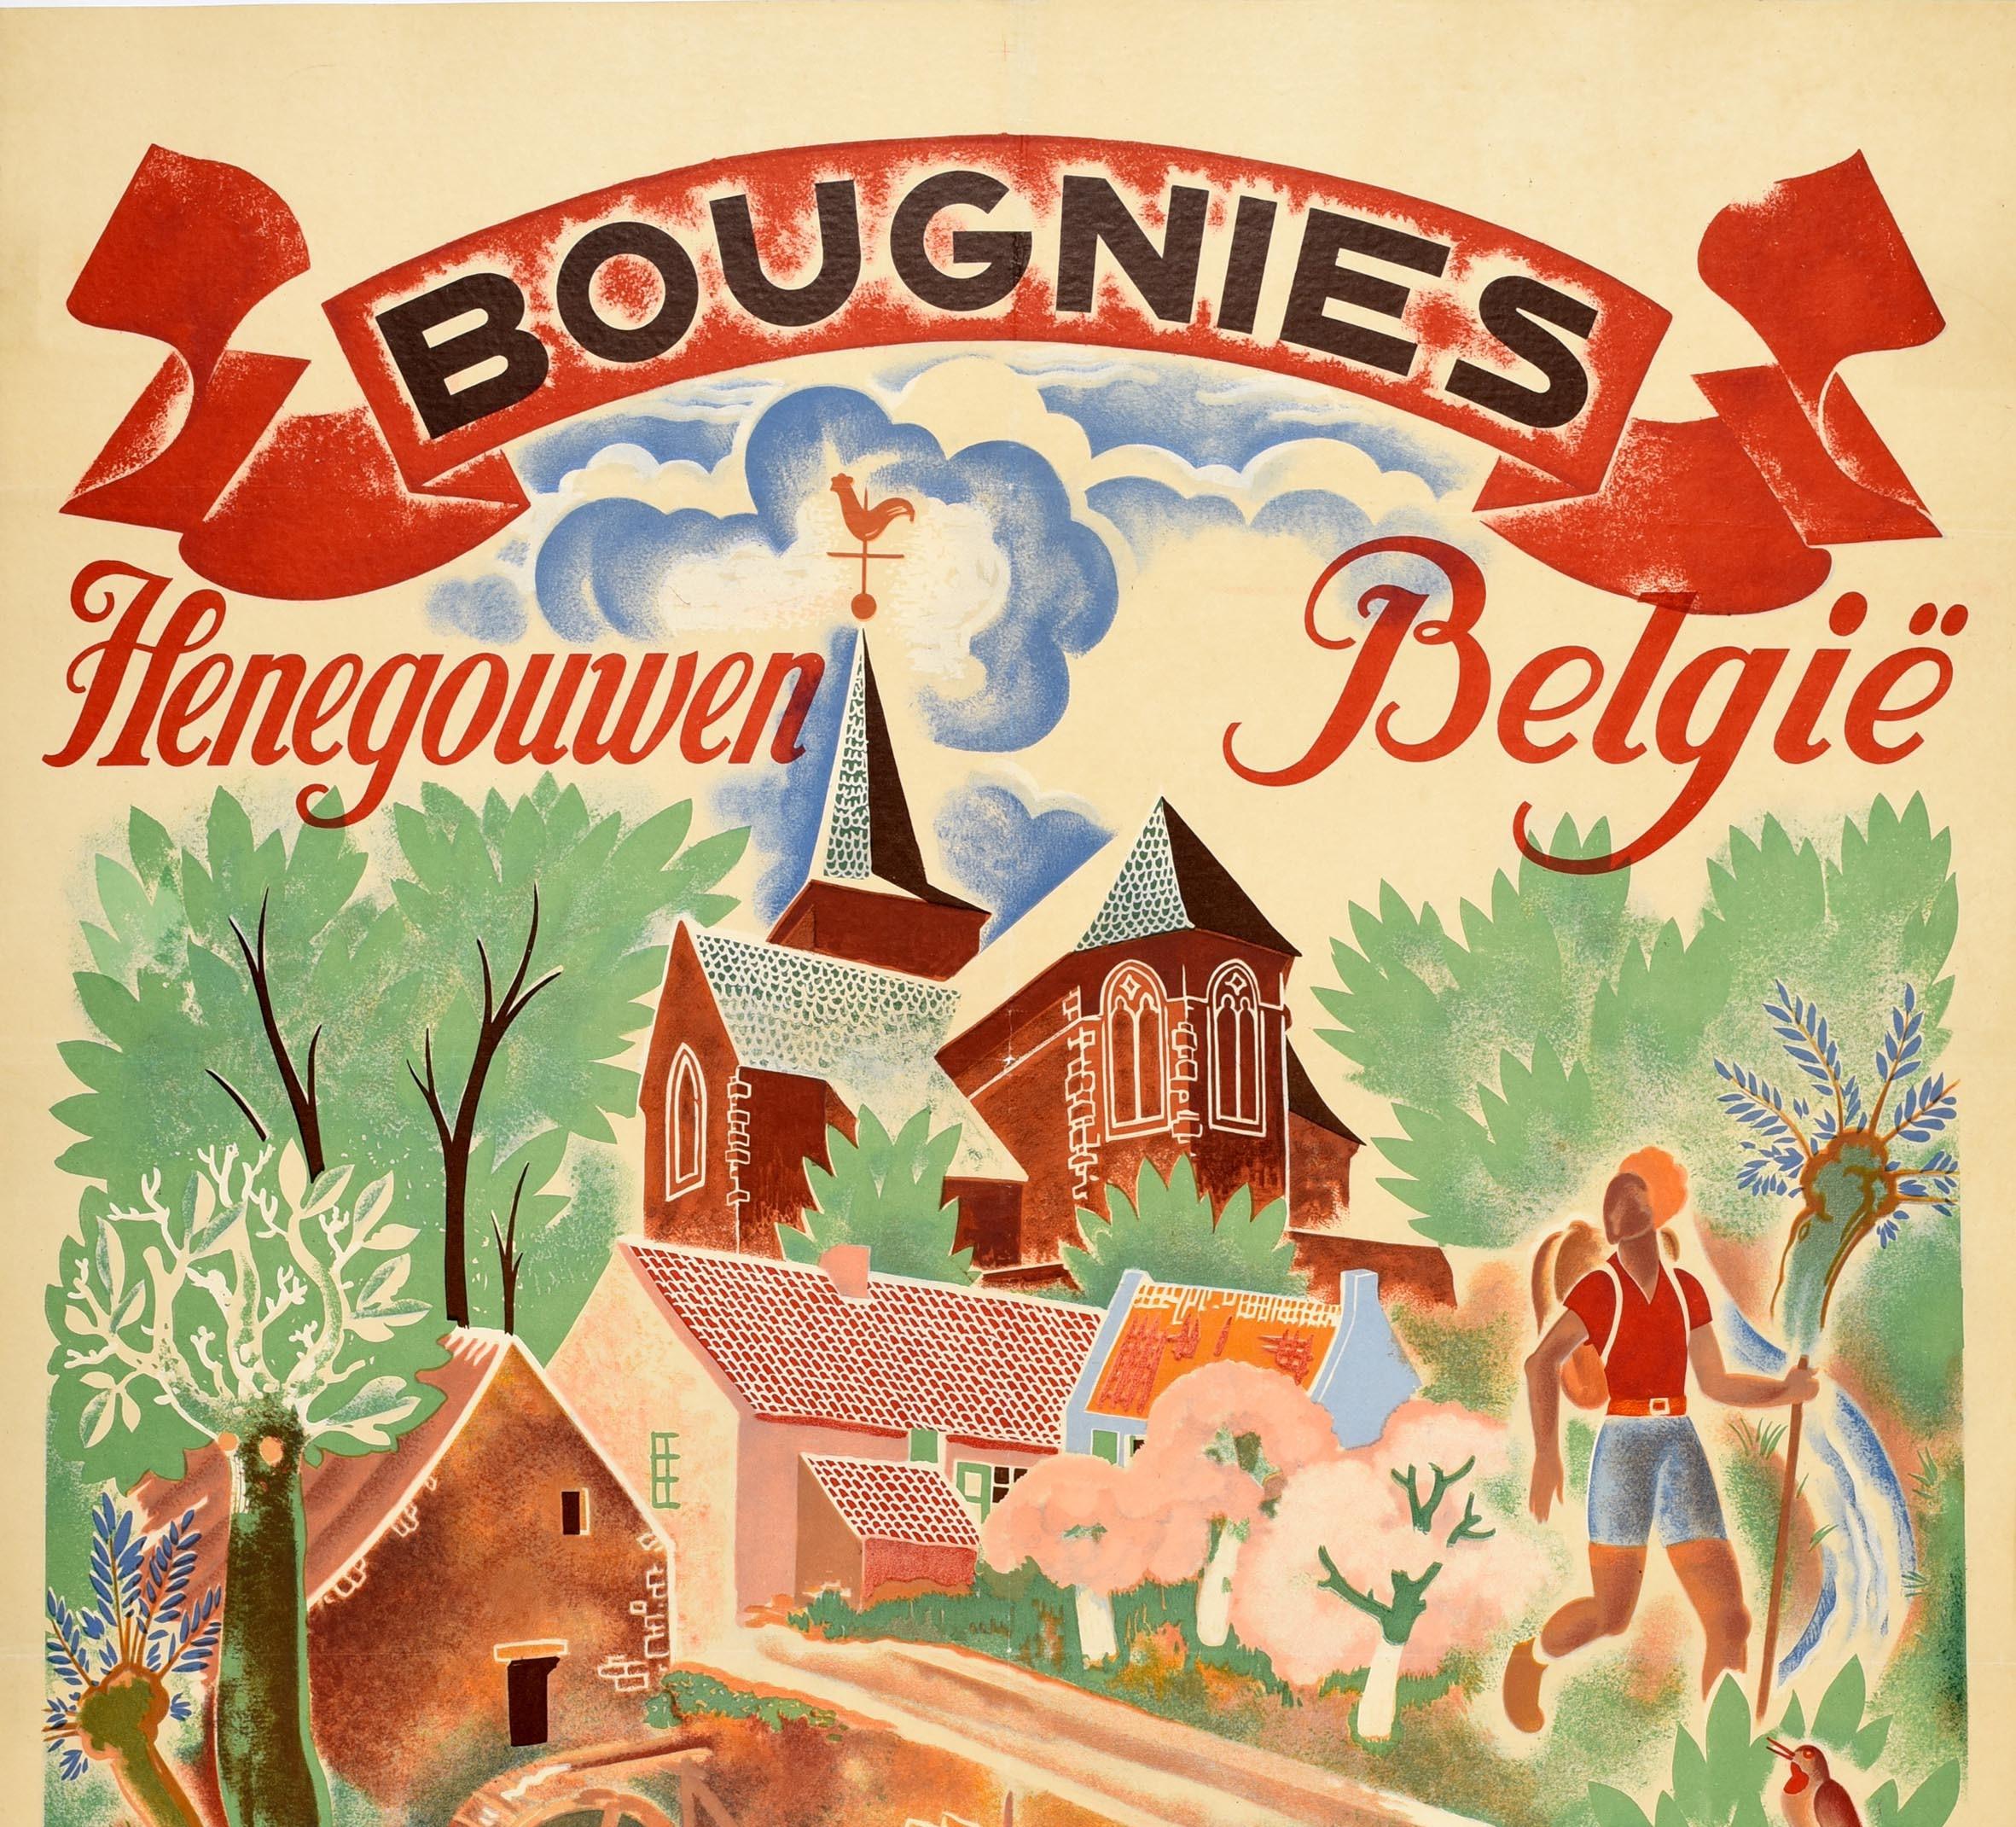 Original Vintage-Reiseplakat für Bougnies Henegouwen Belgie in der südlichen Region Henegouwen in Belgien mit farbenfrohem Kunstwerk im Nervia-Stil, das einen Mann beim Angeln und eine Dame beim Sonnenbaden und Lesen inmitten von Blumen und Vögeln